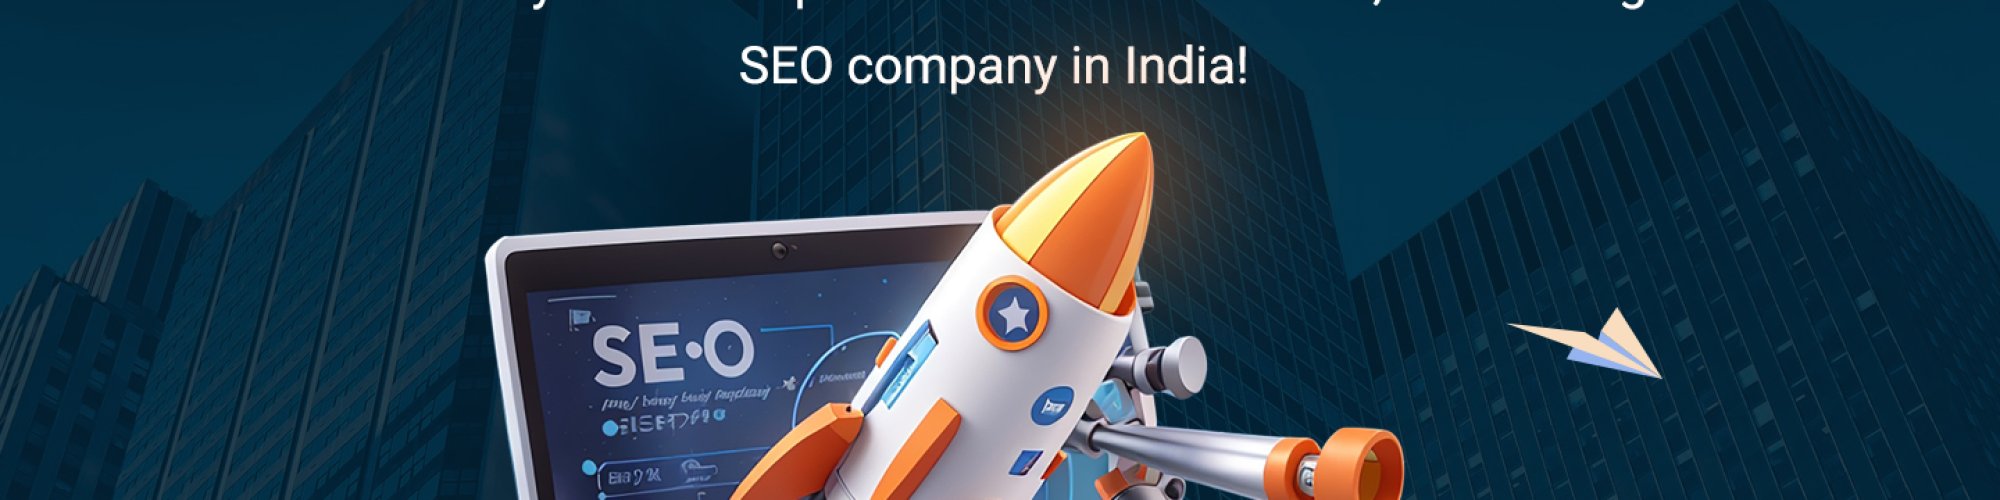 Top SEO Company in India | IndeedSEO